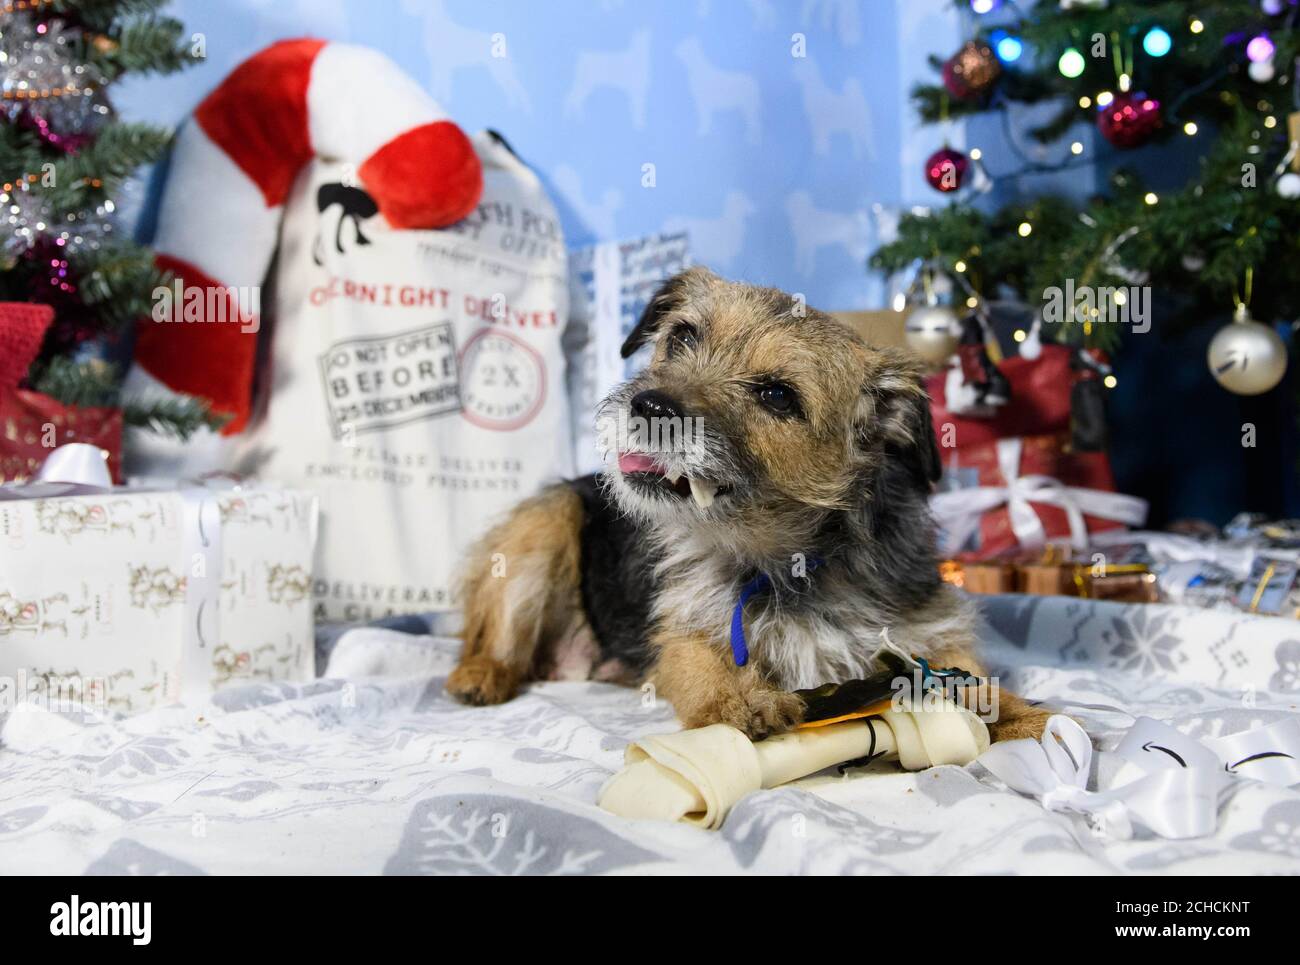 Louise, 9 Jahre alt, eine gerettete Terrier-Hündin, erhält im Battersea Dogs & Cats Home in London ein Begrüßungsgeschenk vom Amazon Christmas Store, während der Online-Händler sich mit der Wohltätigkeitsorganisation zusammenarbeitet, um seinen Bewohnern die meistverkauften Weihnachtsgeschenke für Haustiere zu liefern. DRÜCKEN SIE ZUORDNUNG. Foto. Ausgabedatum: 15. Dezember 2017. Die Verkäufe von Amazon zeigen, dass drei Viertel aller Heimtiergeschenke in diesem Jahr für Hunde bestimmt sind, wobei mehr als die Hälfte der Tiere bis zu drei Geschenke erhalten. Laut einer unabhängigen Umfrage, die von Amazon in Auftrag gegeben wurde, beträgt der durchschnittliche Betrag, der an Weihnachten für das Haustier der Familie ausgegeben wird, £13. Pho Stockfoto